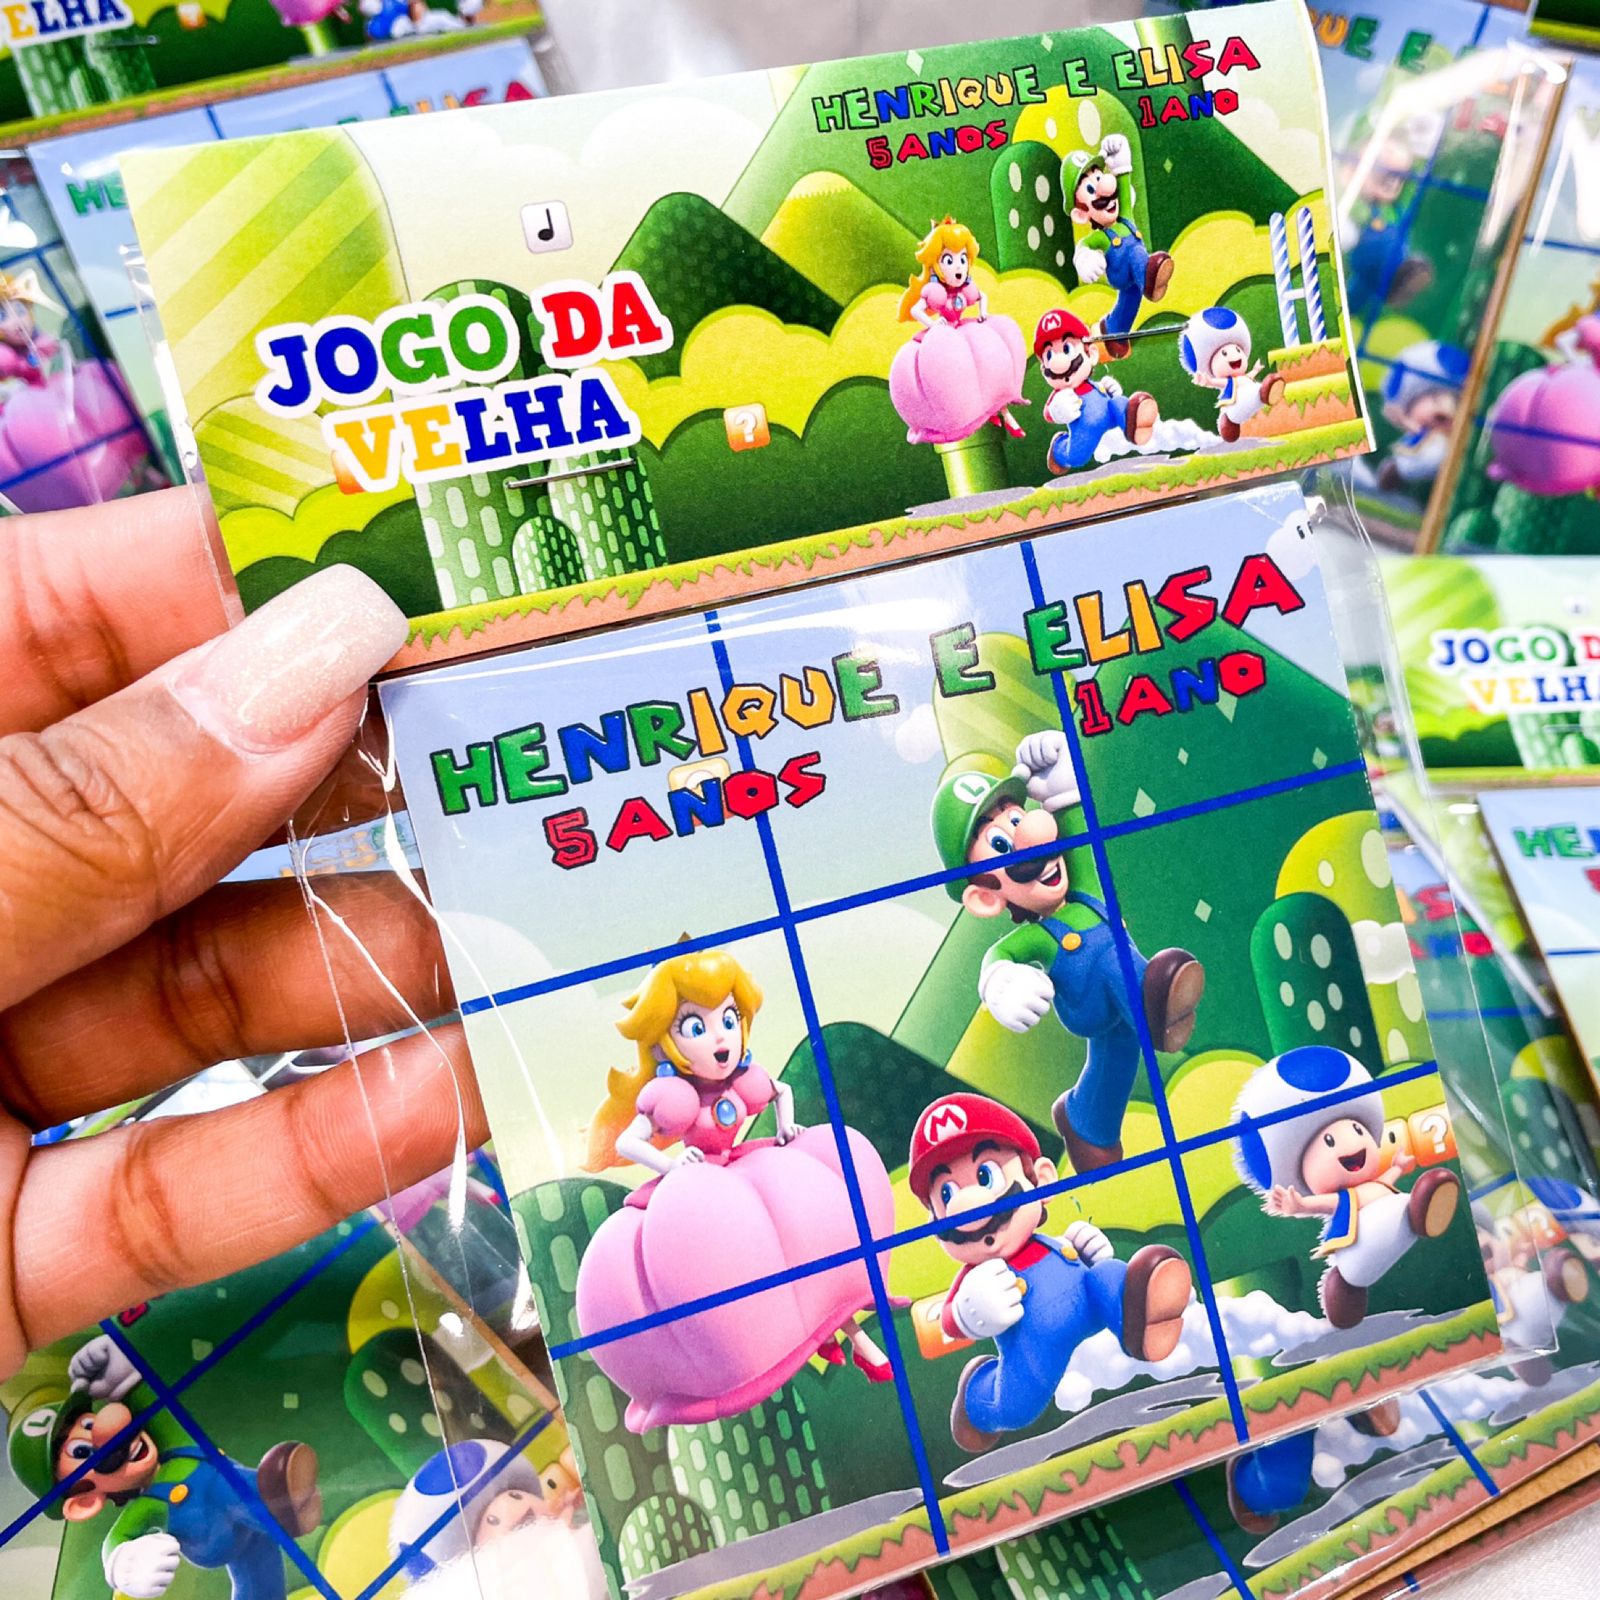 60 Jogos Da Velha Mdf Personalizado Lembrancinha Infantil